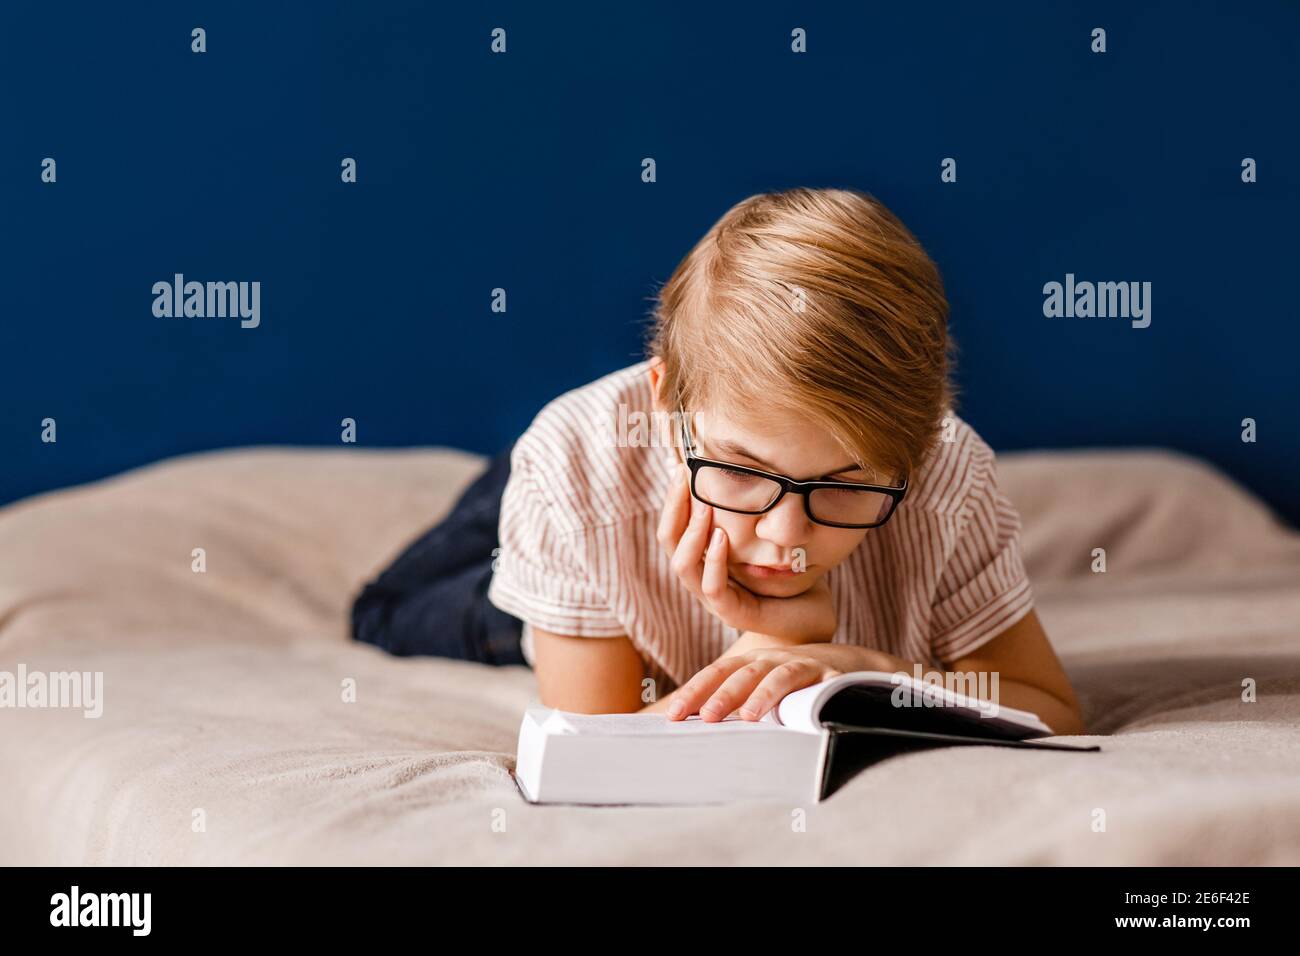 Ein 10-jähriger Junge mit Brille liegt auf dem Bett und liest ein großes Buch. Stockfoto